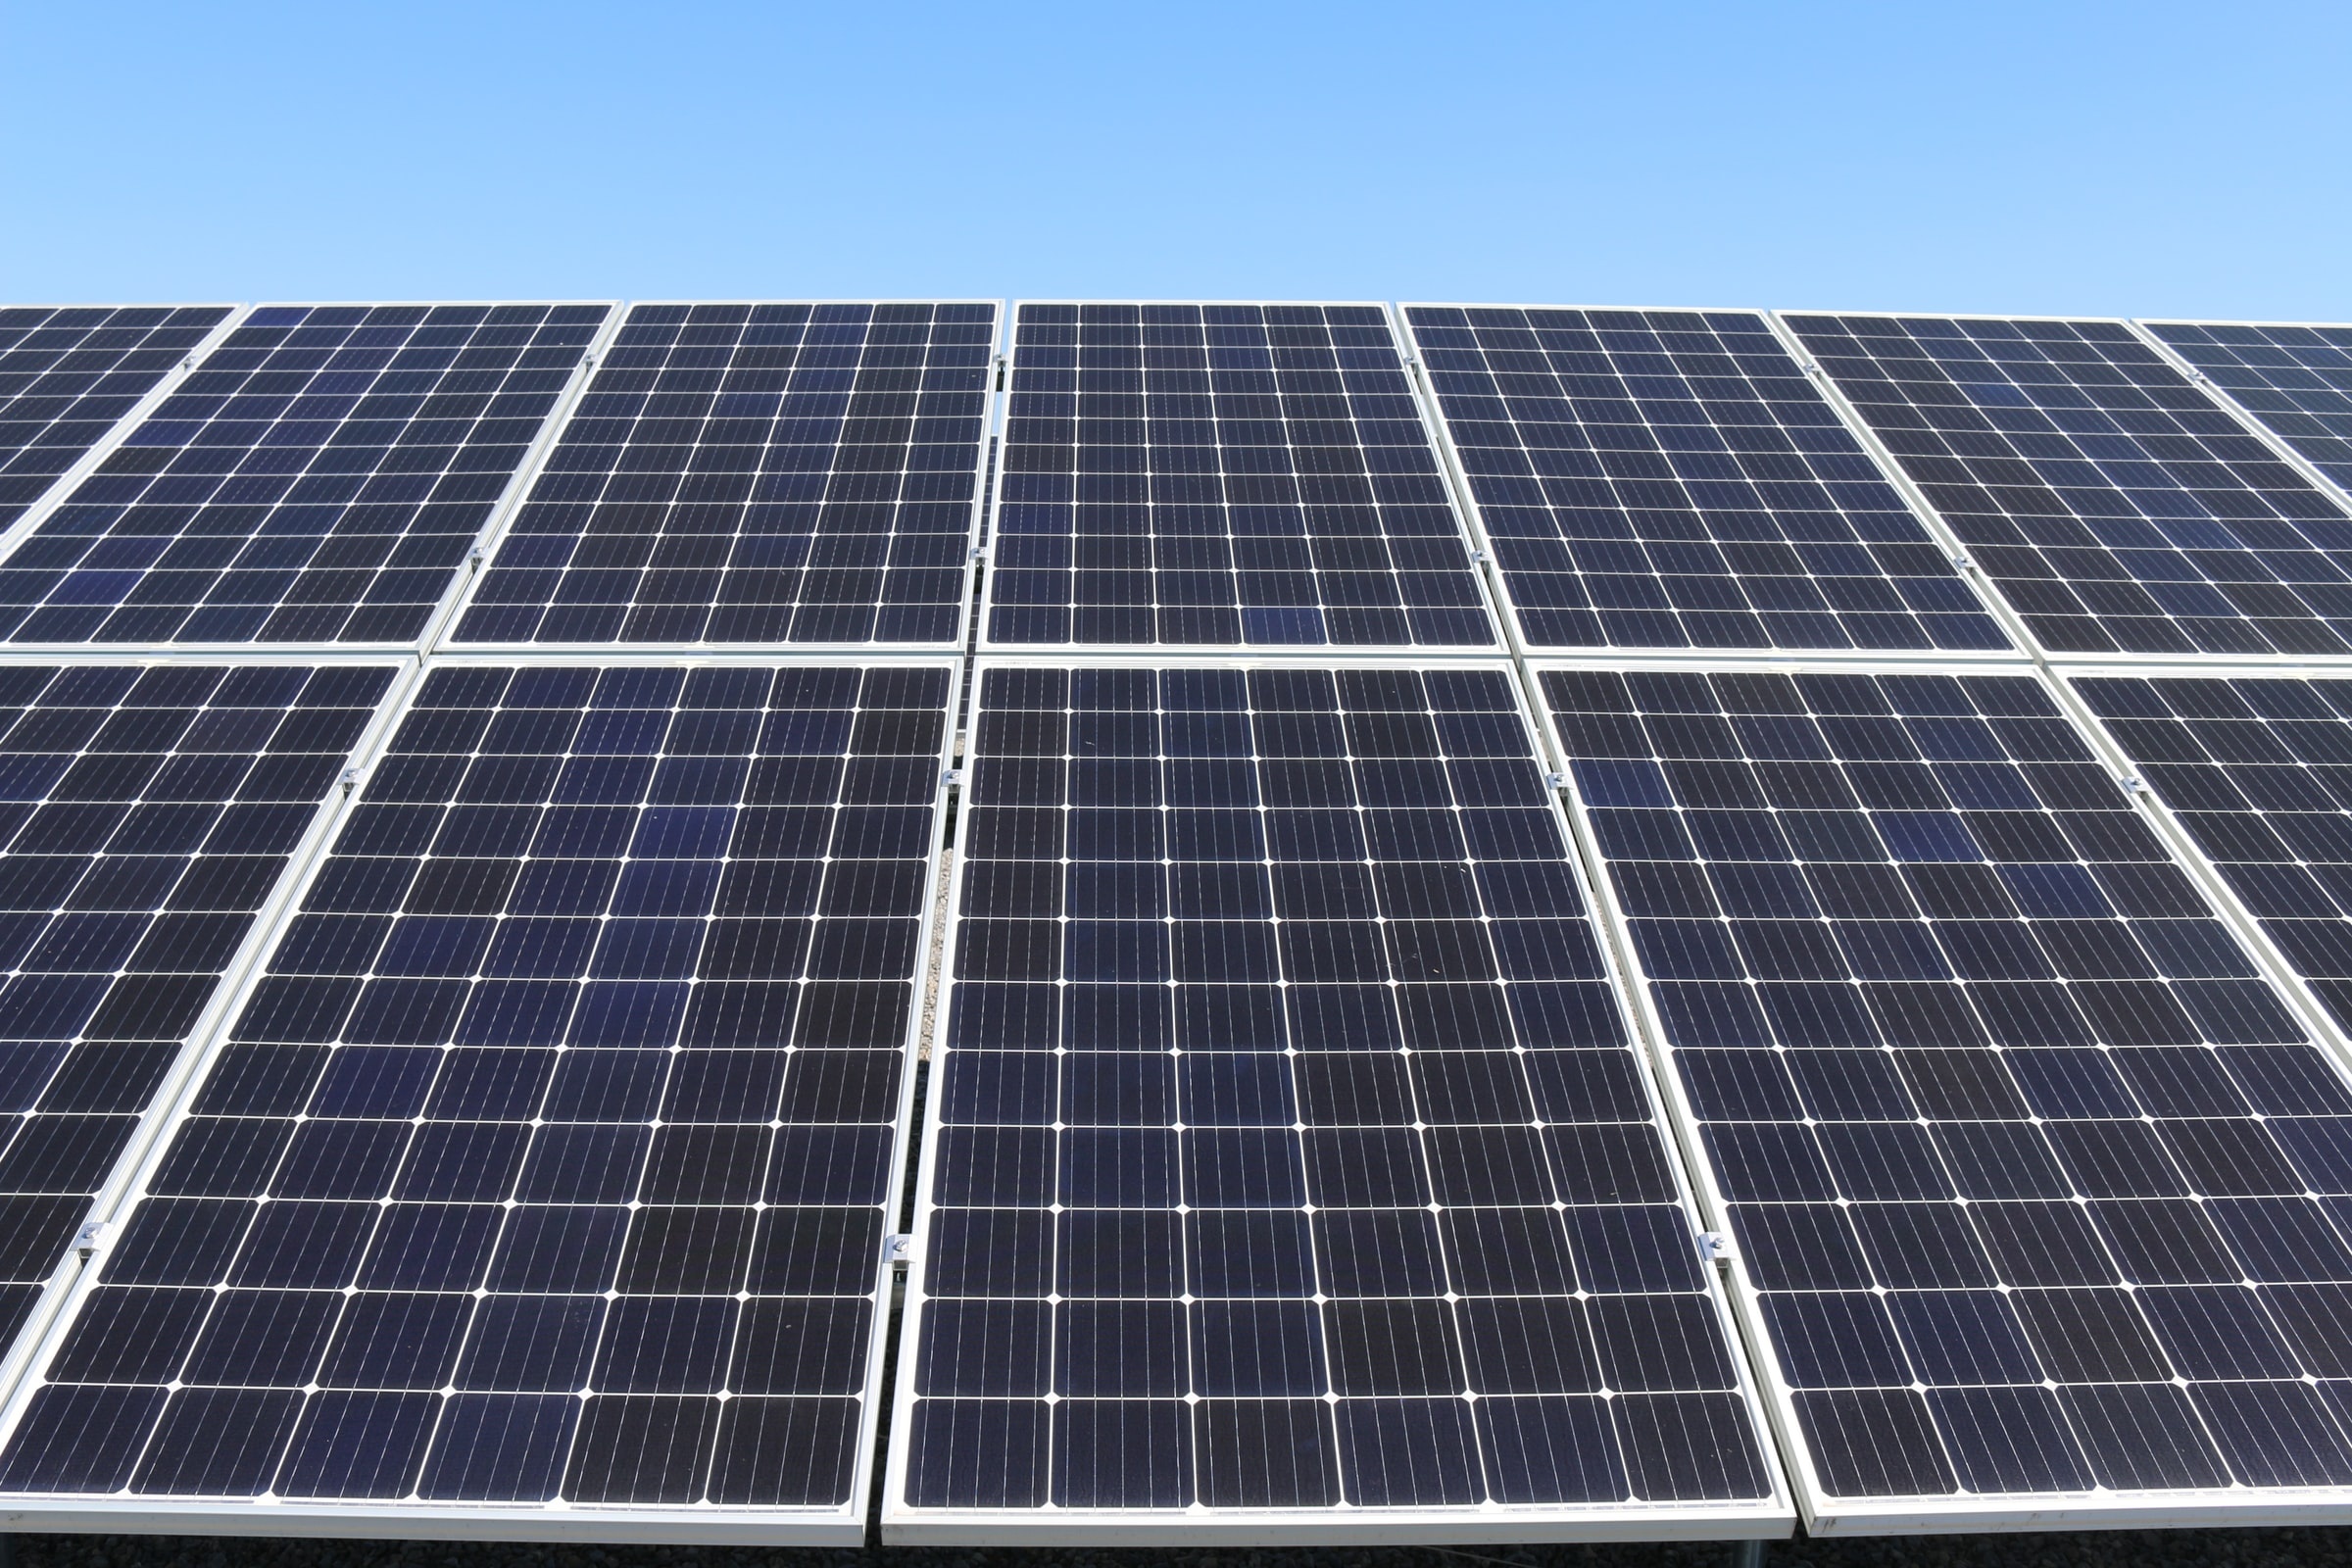 Solar PV, Solar System, Solar Array, Solar Panels, YSG Solar